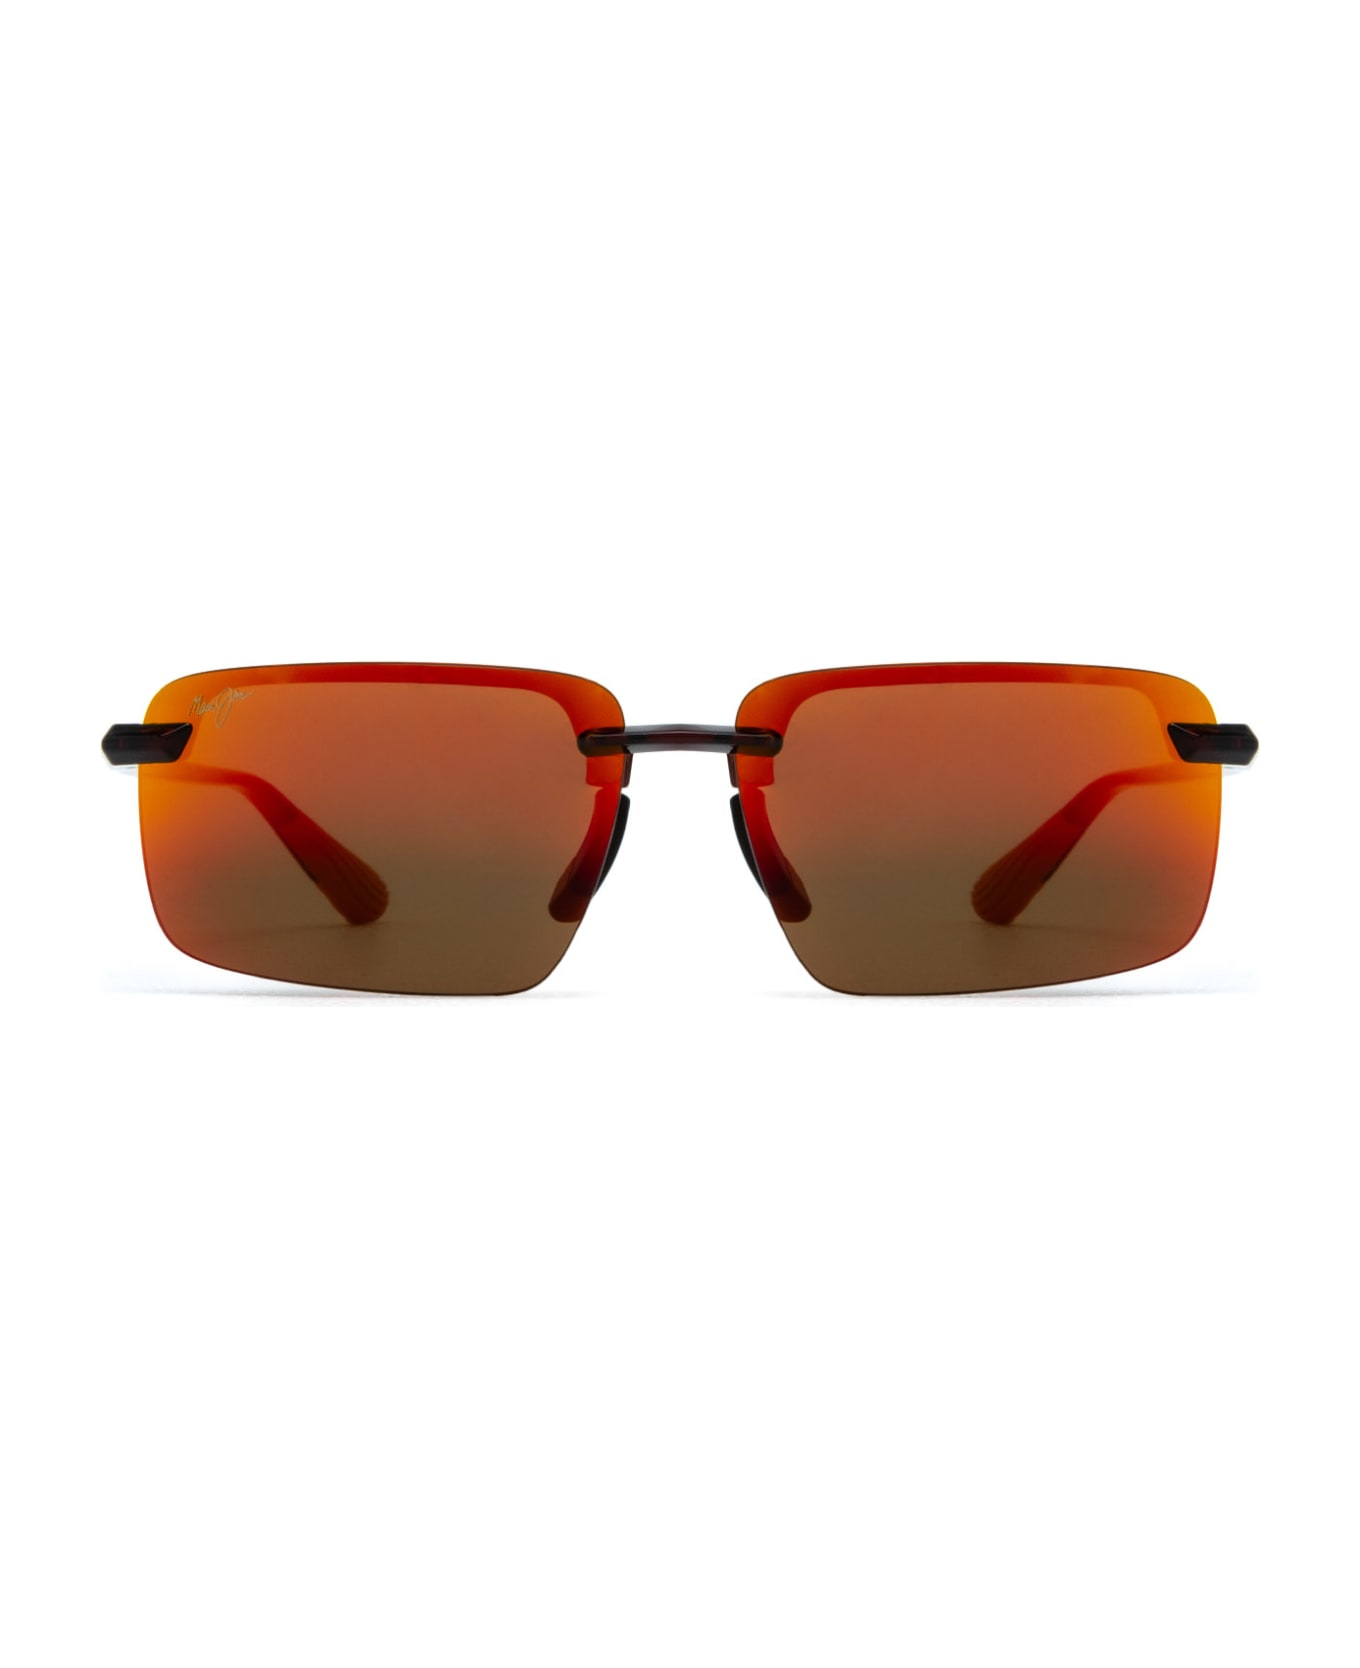 Maui Jim Mj626 Shiny Reddish Sunglasses - Shiny Reddish サングラス